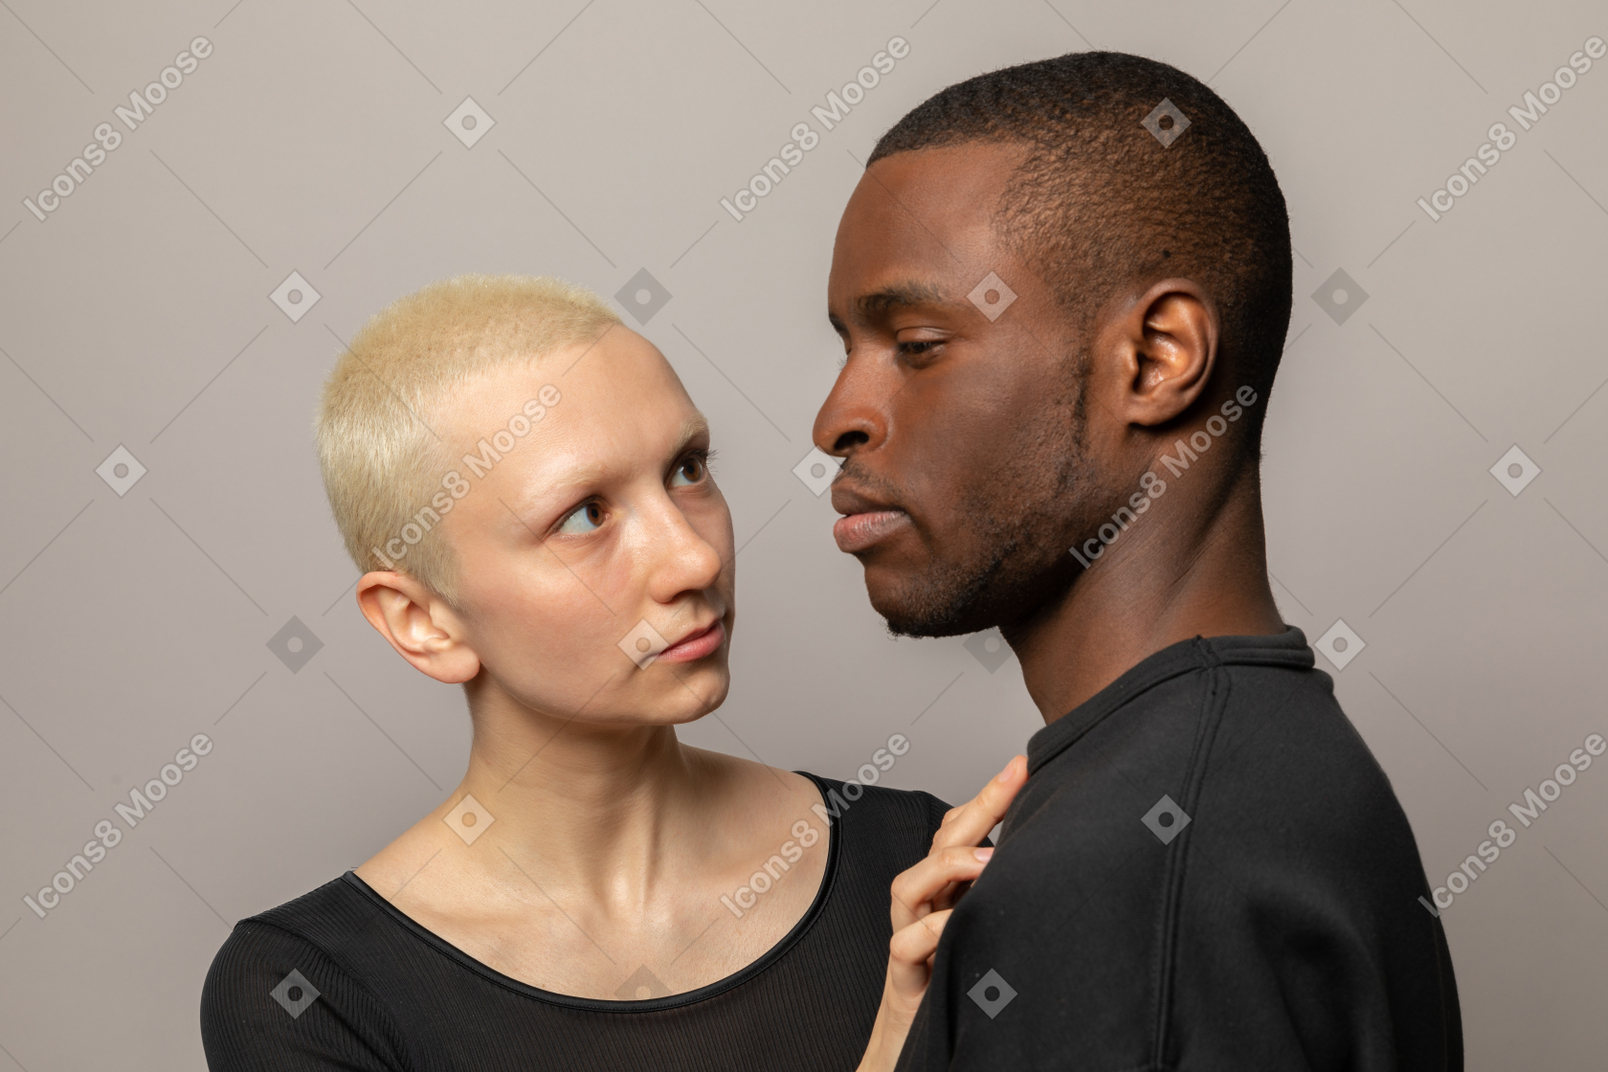 Girlfriend put hand on boyfriend's chest